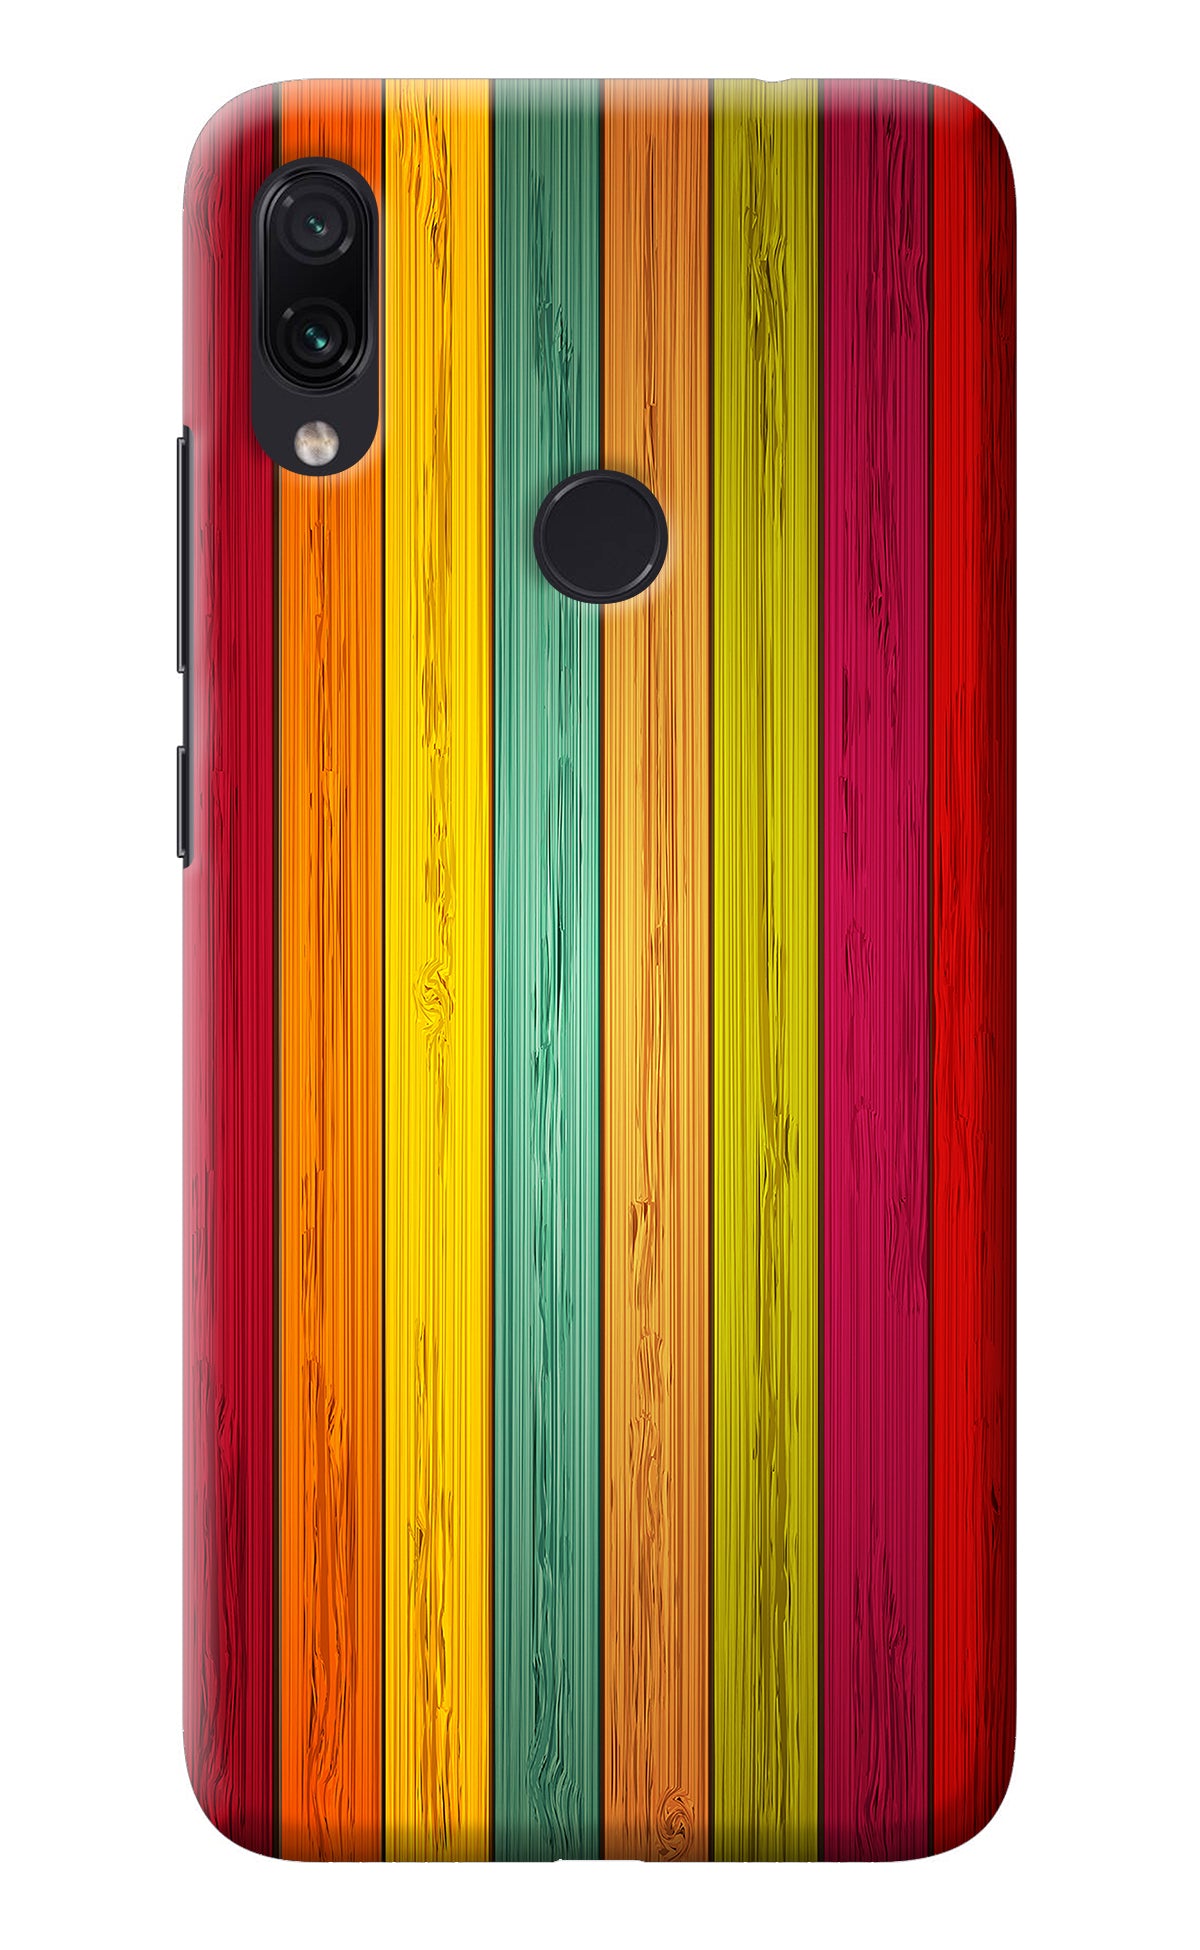 Multicolor Wooden Redmi Note 7 Pro Back Cover